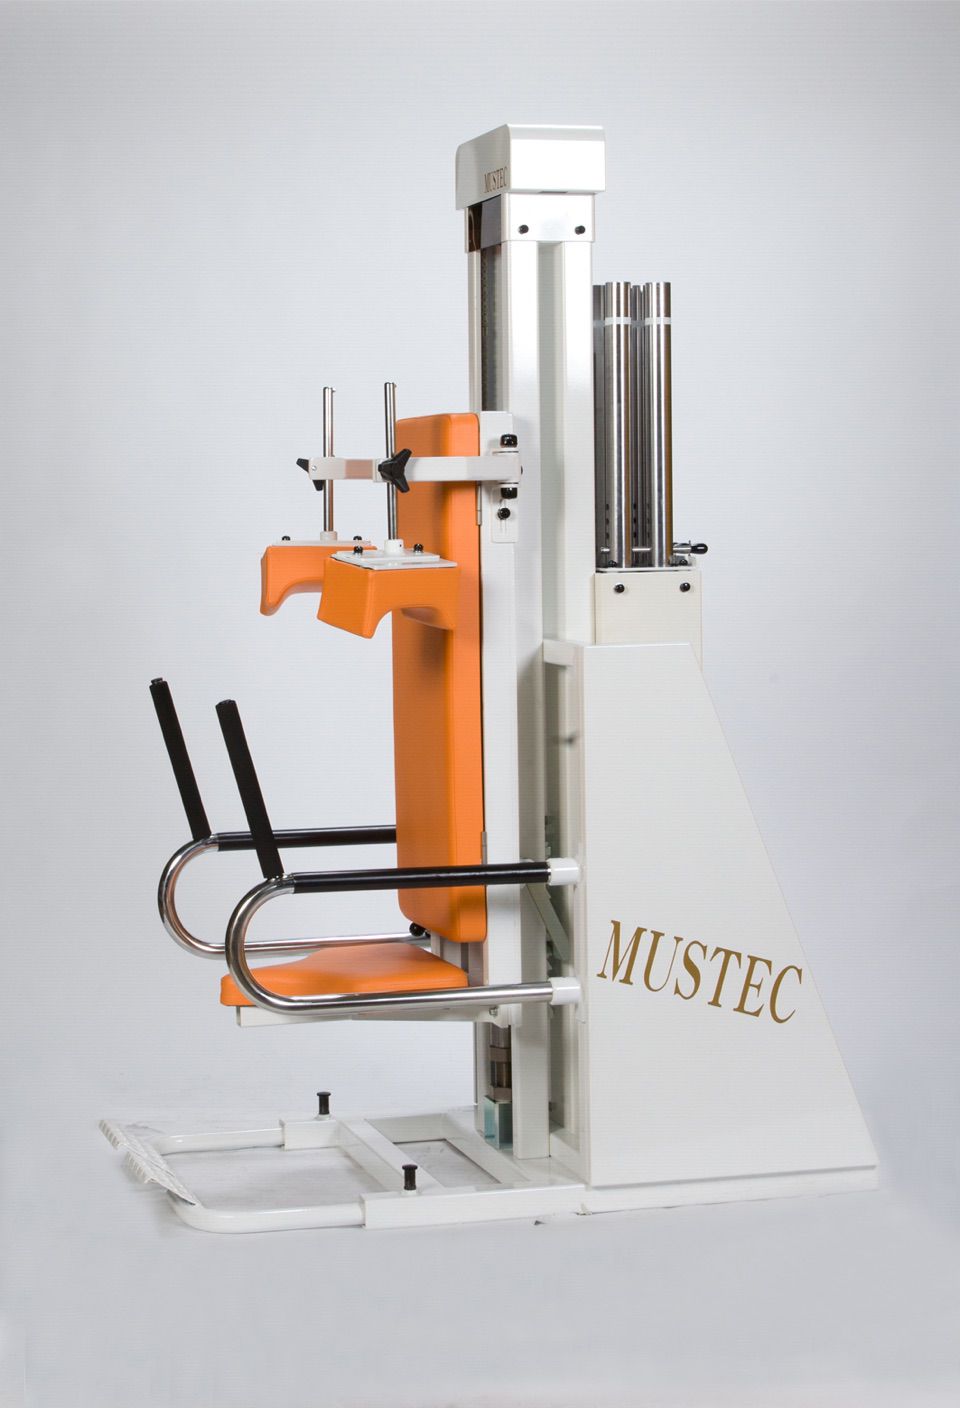 Mustec machine